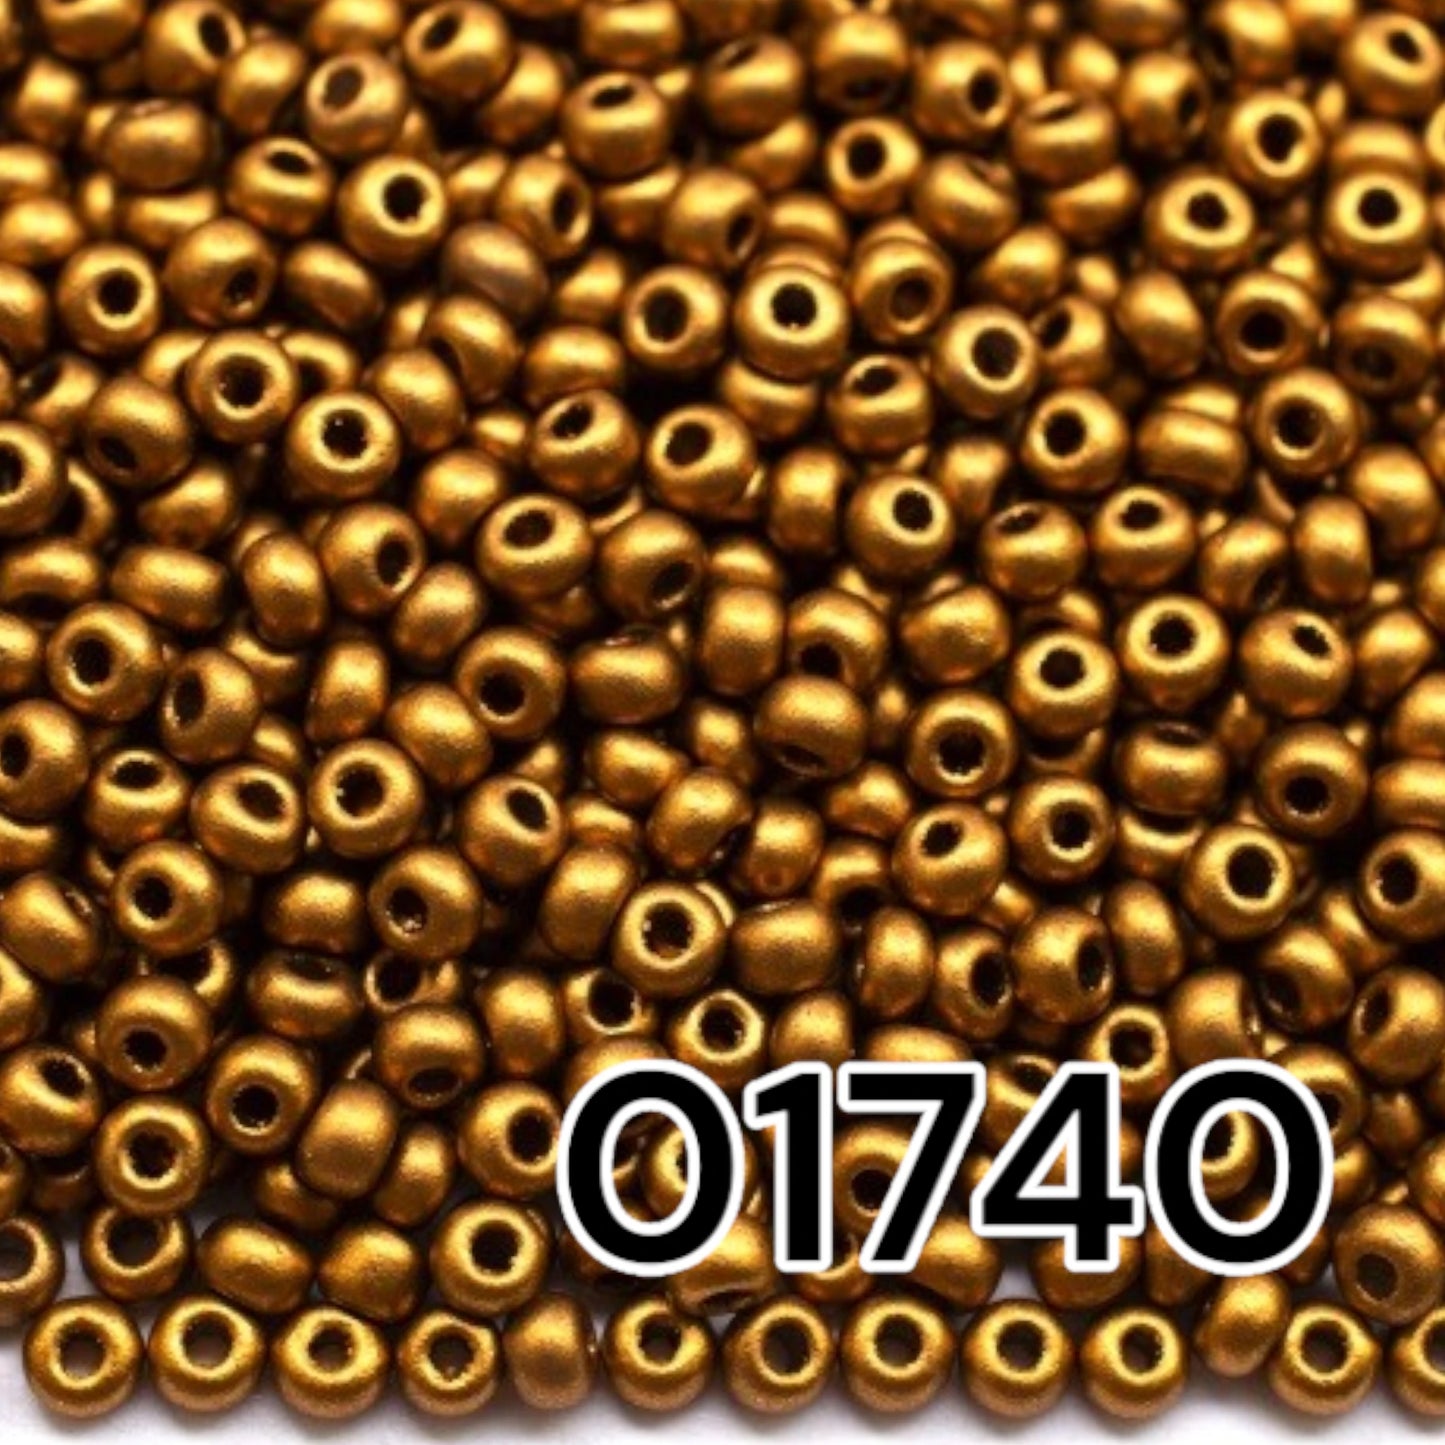 01740 Czech seed beads PRECIOSA round 10/0 Golden metallic. Metallic - Opaque Bronze.